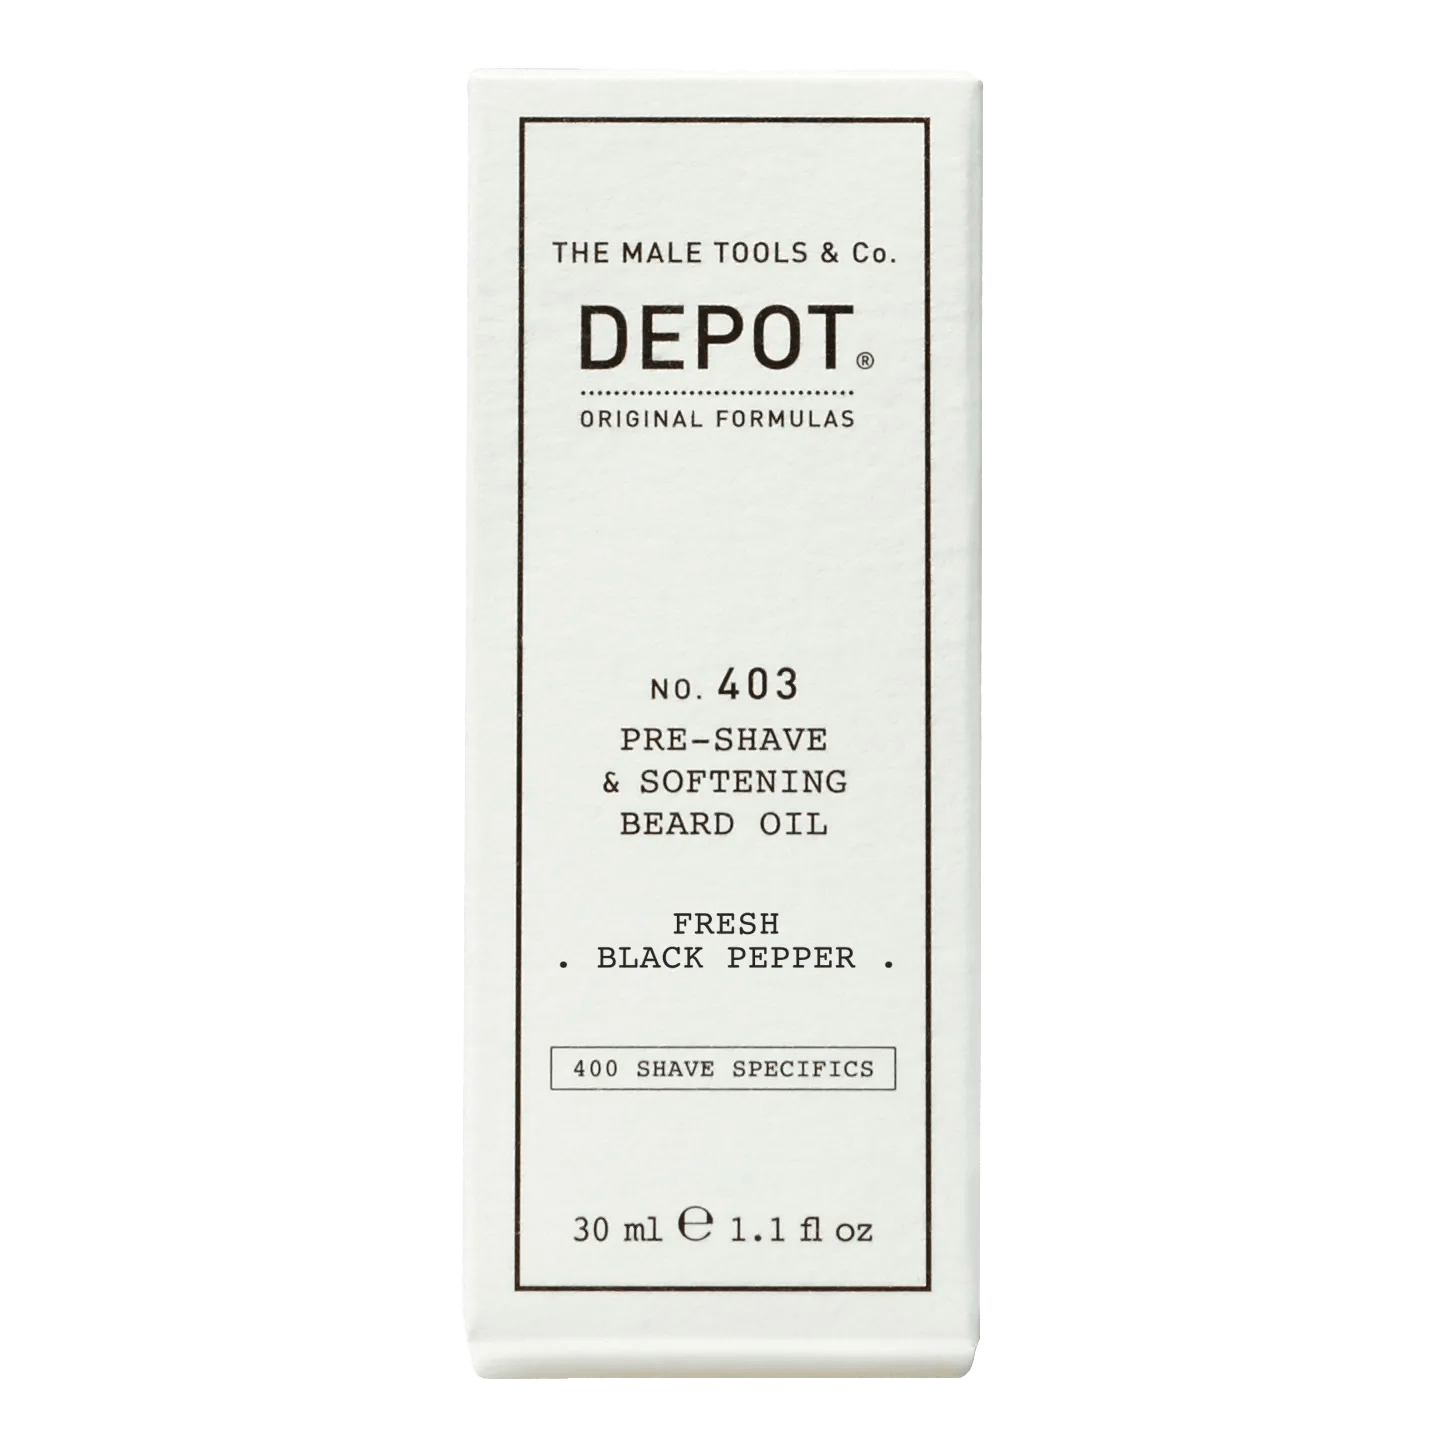 Depot No. 403 Pre-Shave & Softening Beard Oil Fresh Black Pepper